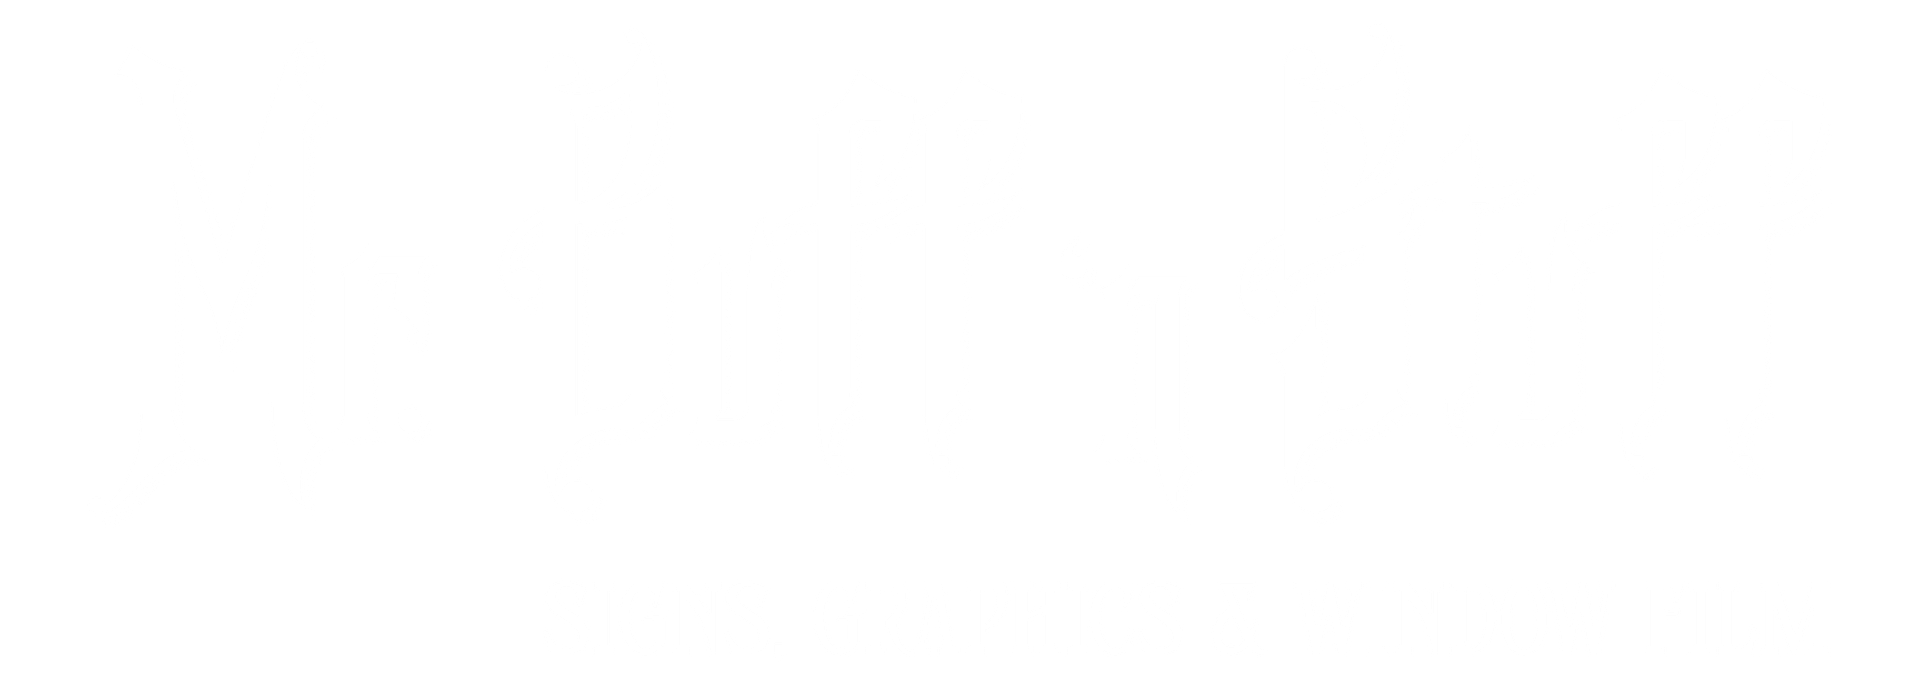 Mr. Buff 'n Stuff LLC Logo